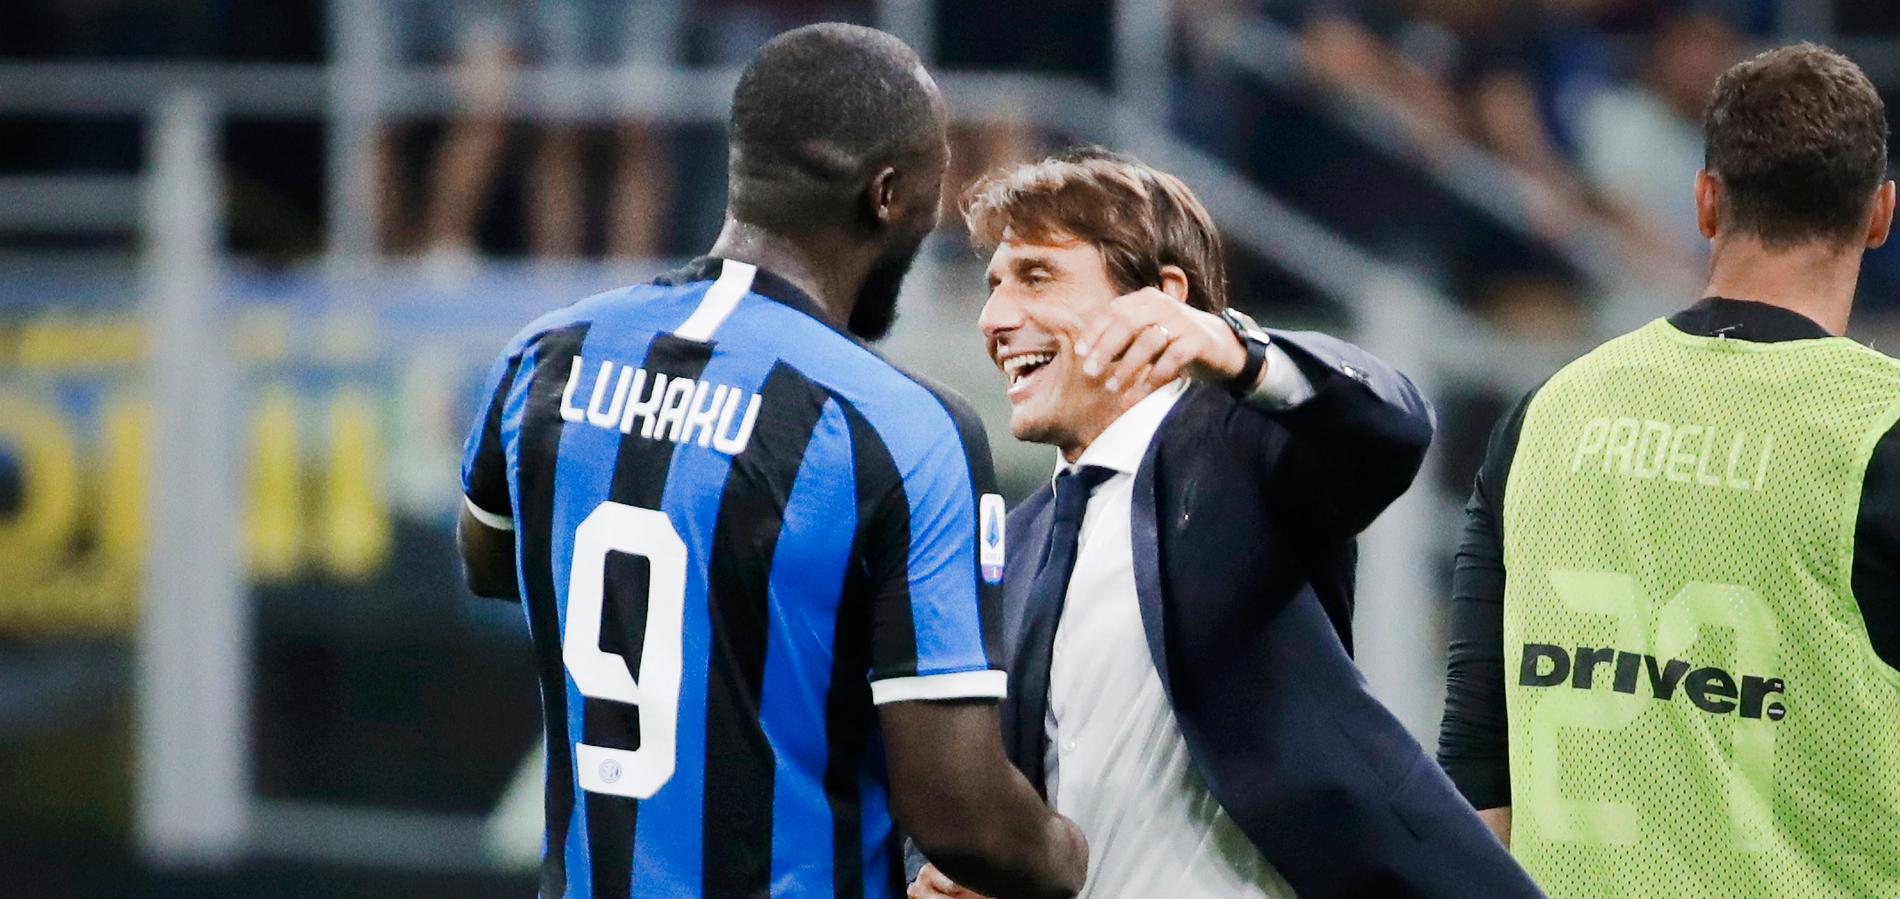 Lukaku får en kram av Conte.